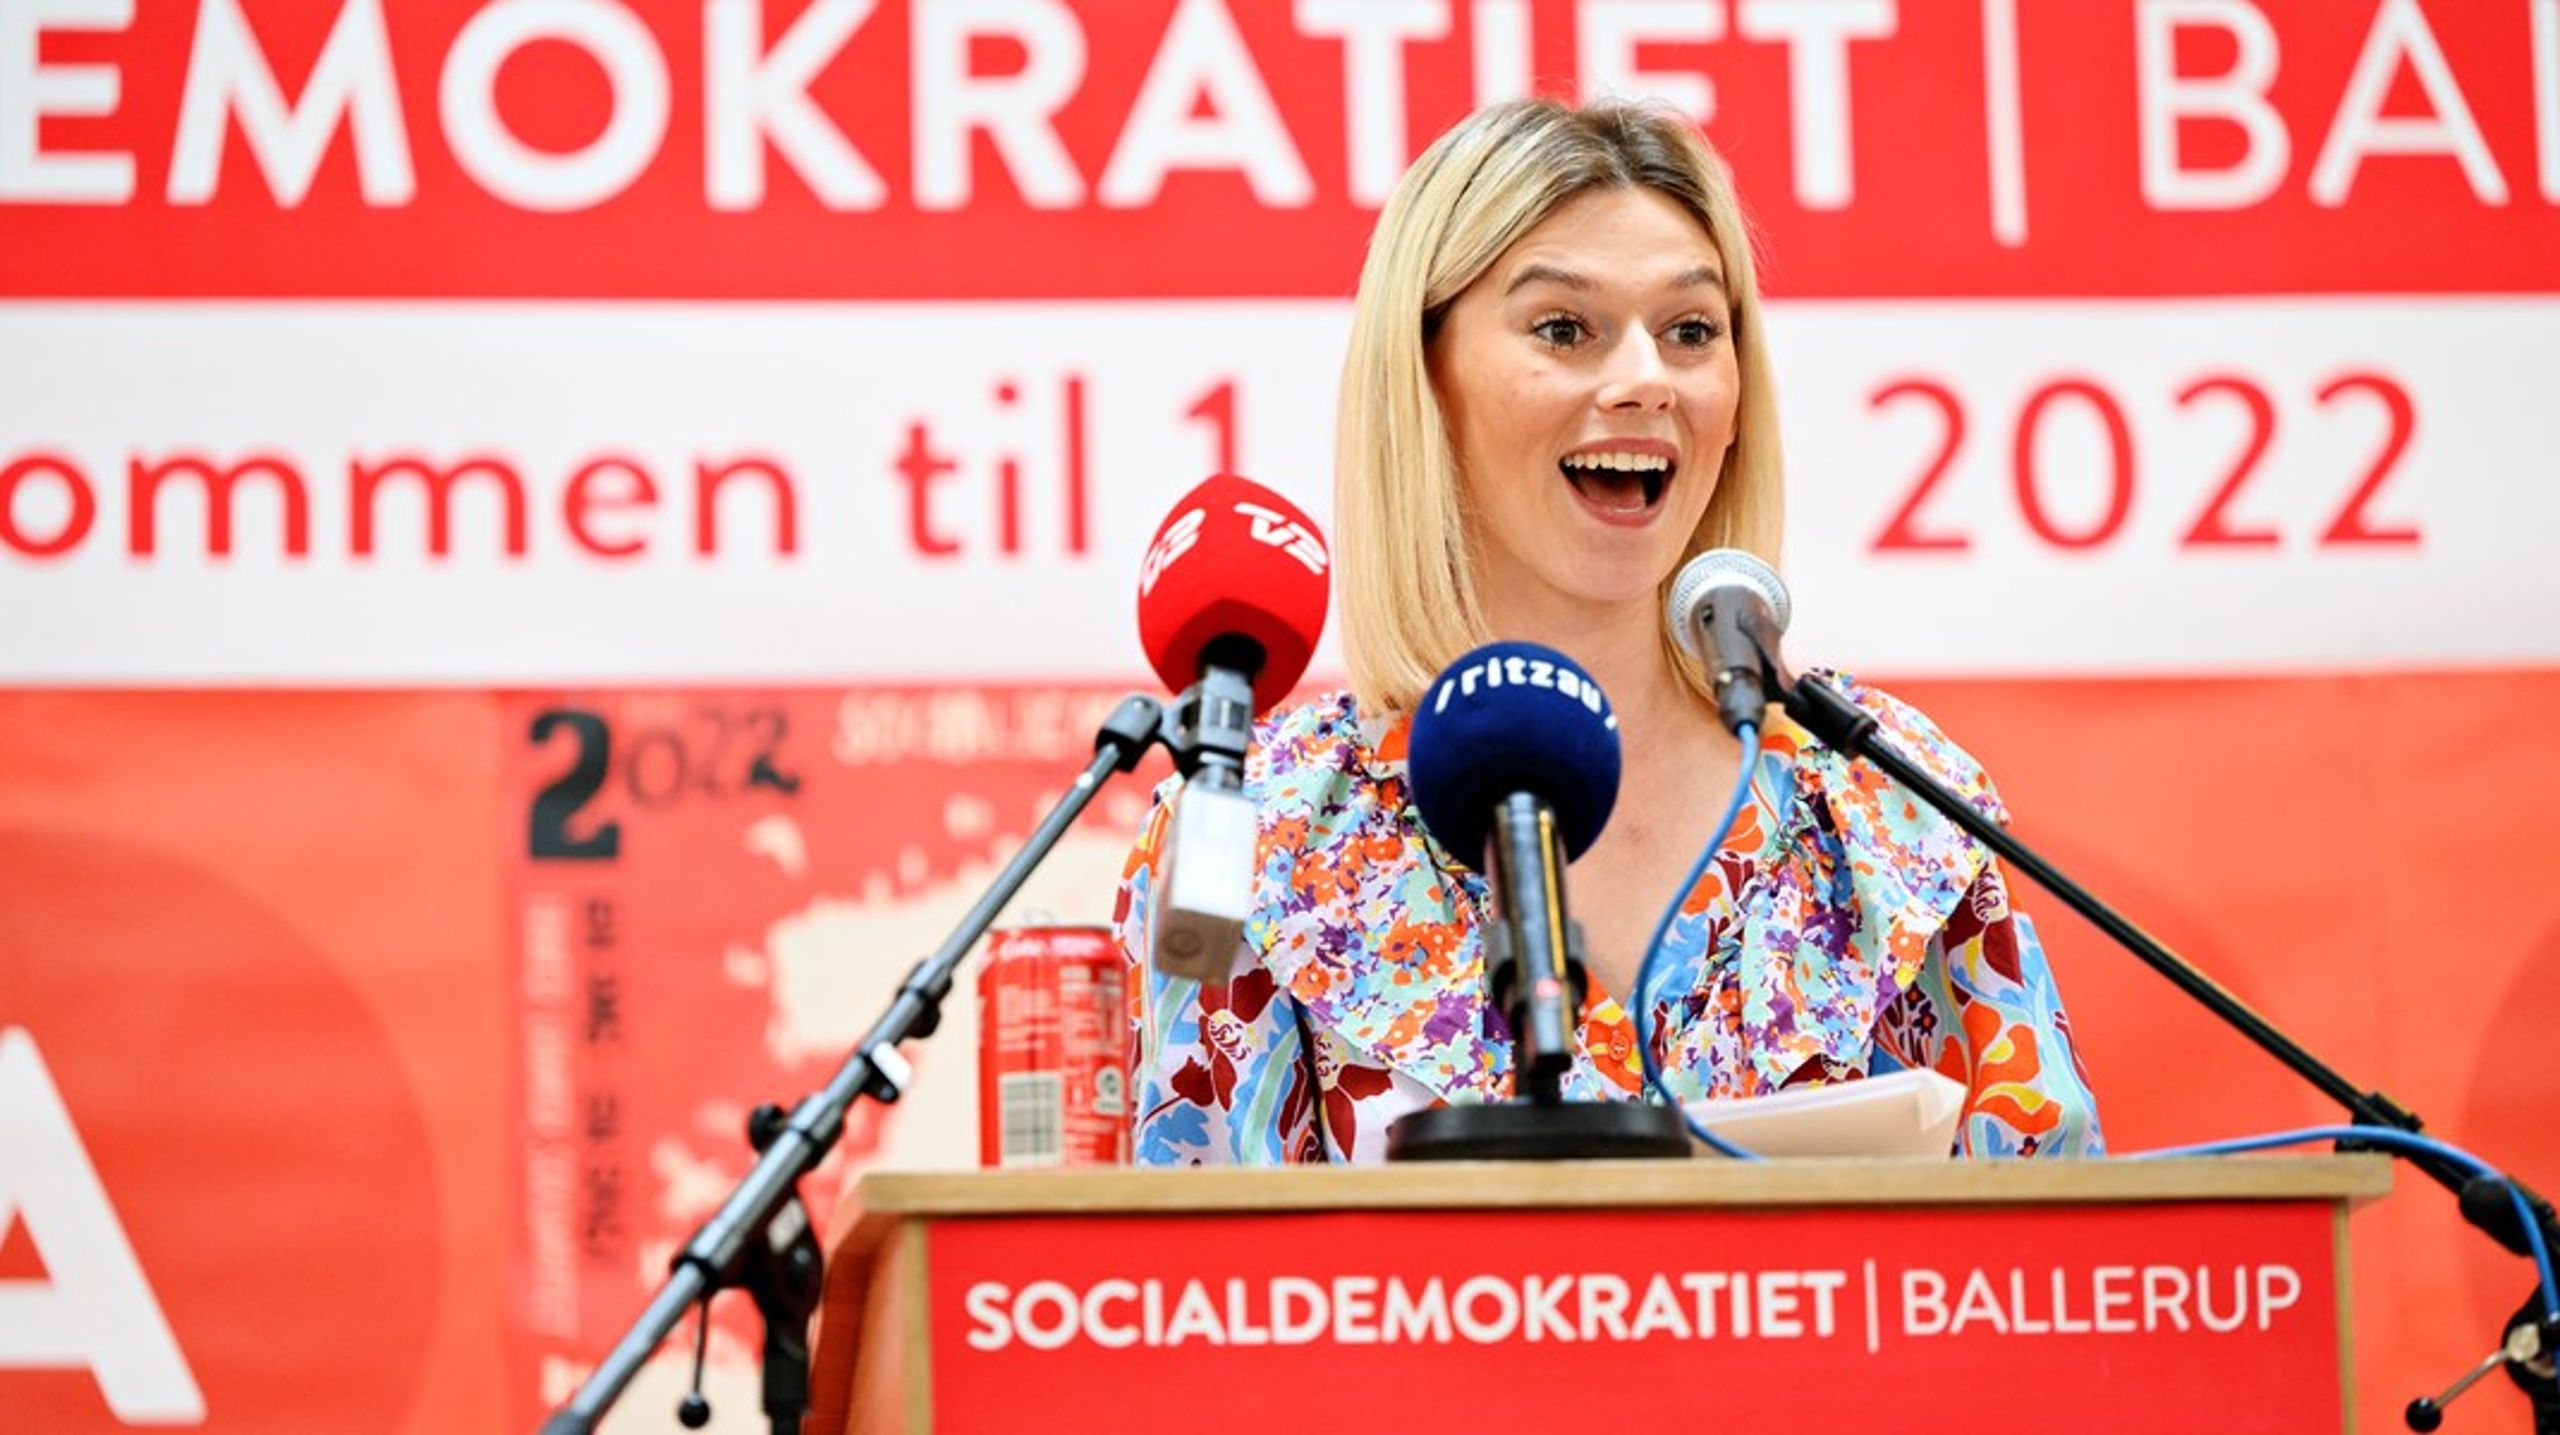 Sofie de Bretteville Olsen er medlem af regionsrådet i Region Hovedstaden, hvor hun blev valgt ind for Socialdemokratiet i 2021. Hun har været medlem af Danmarks Socialdemokratiske Ungdom (DSU) flere år.